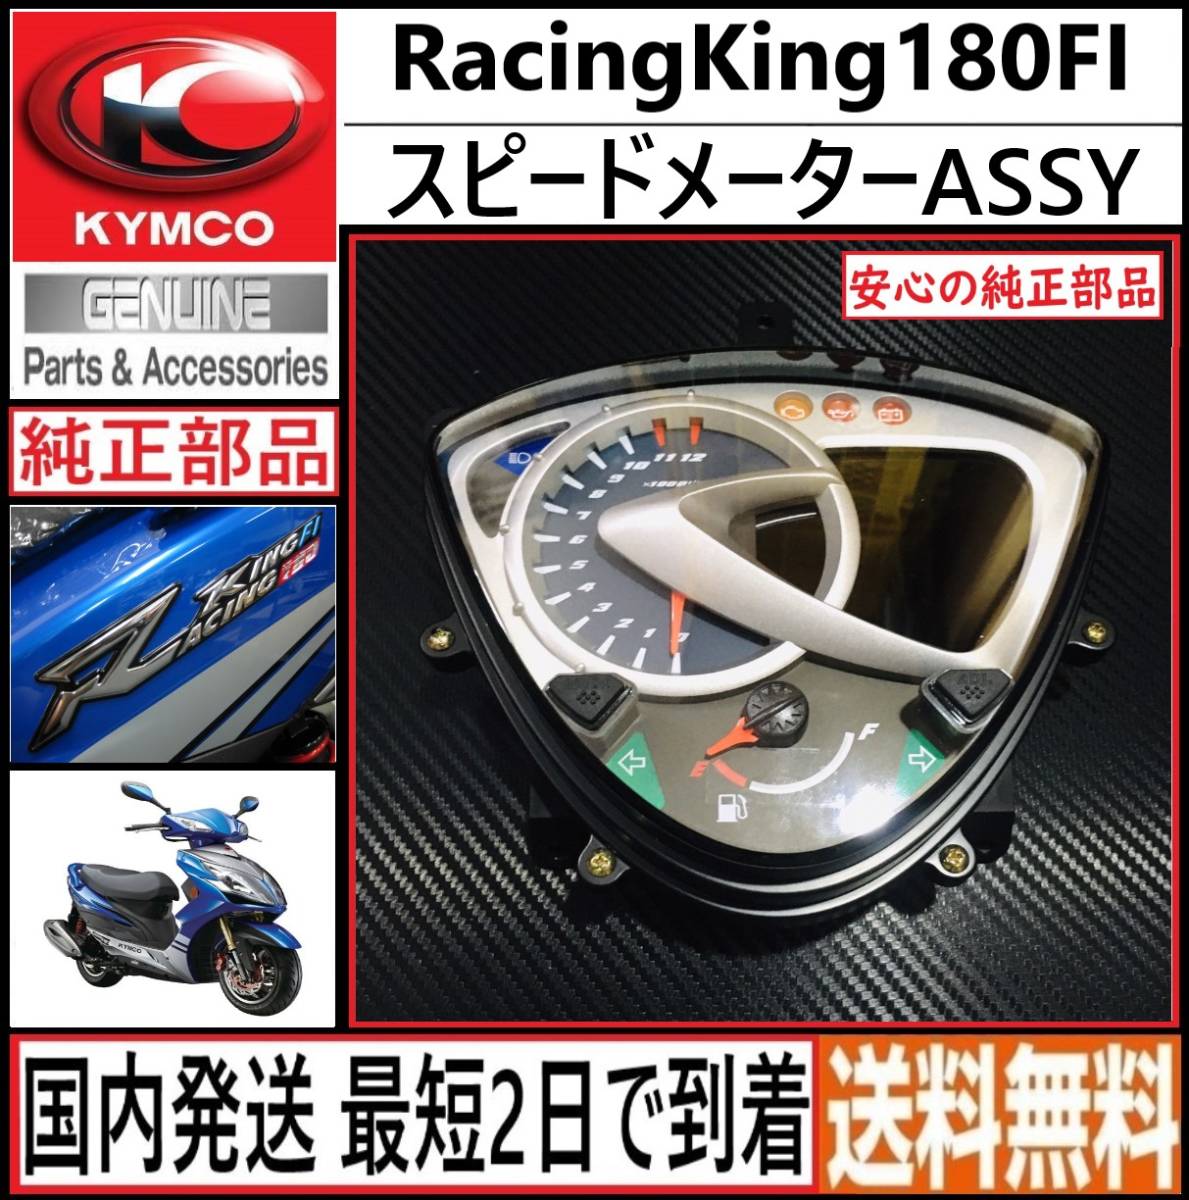 キムコ レーシングキング180FI 純正 スピードメーターASSY 新品 日本 